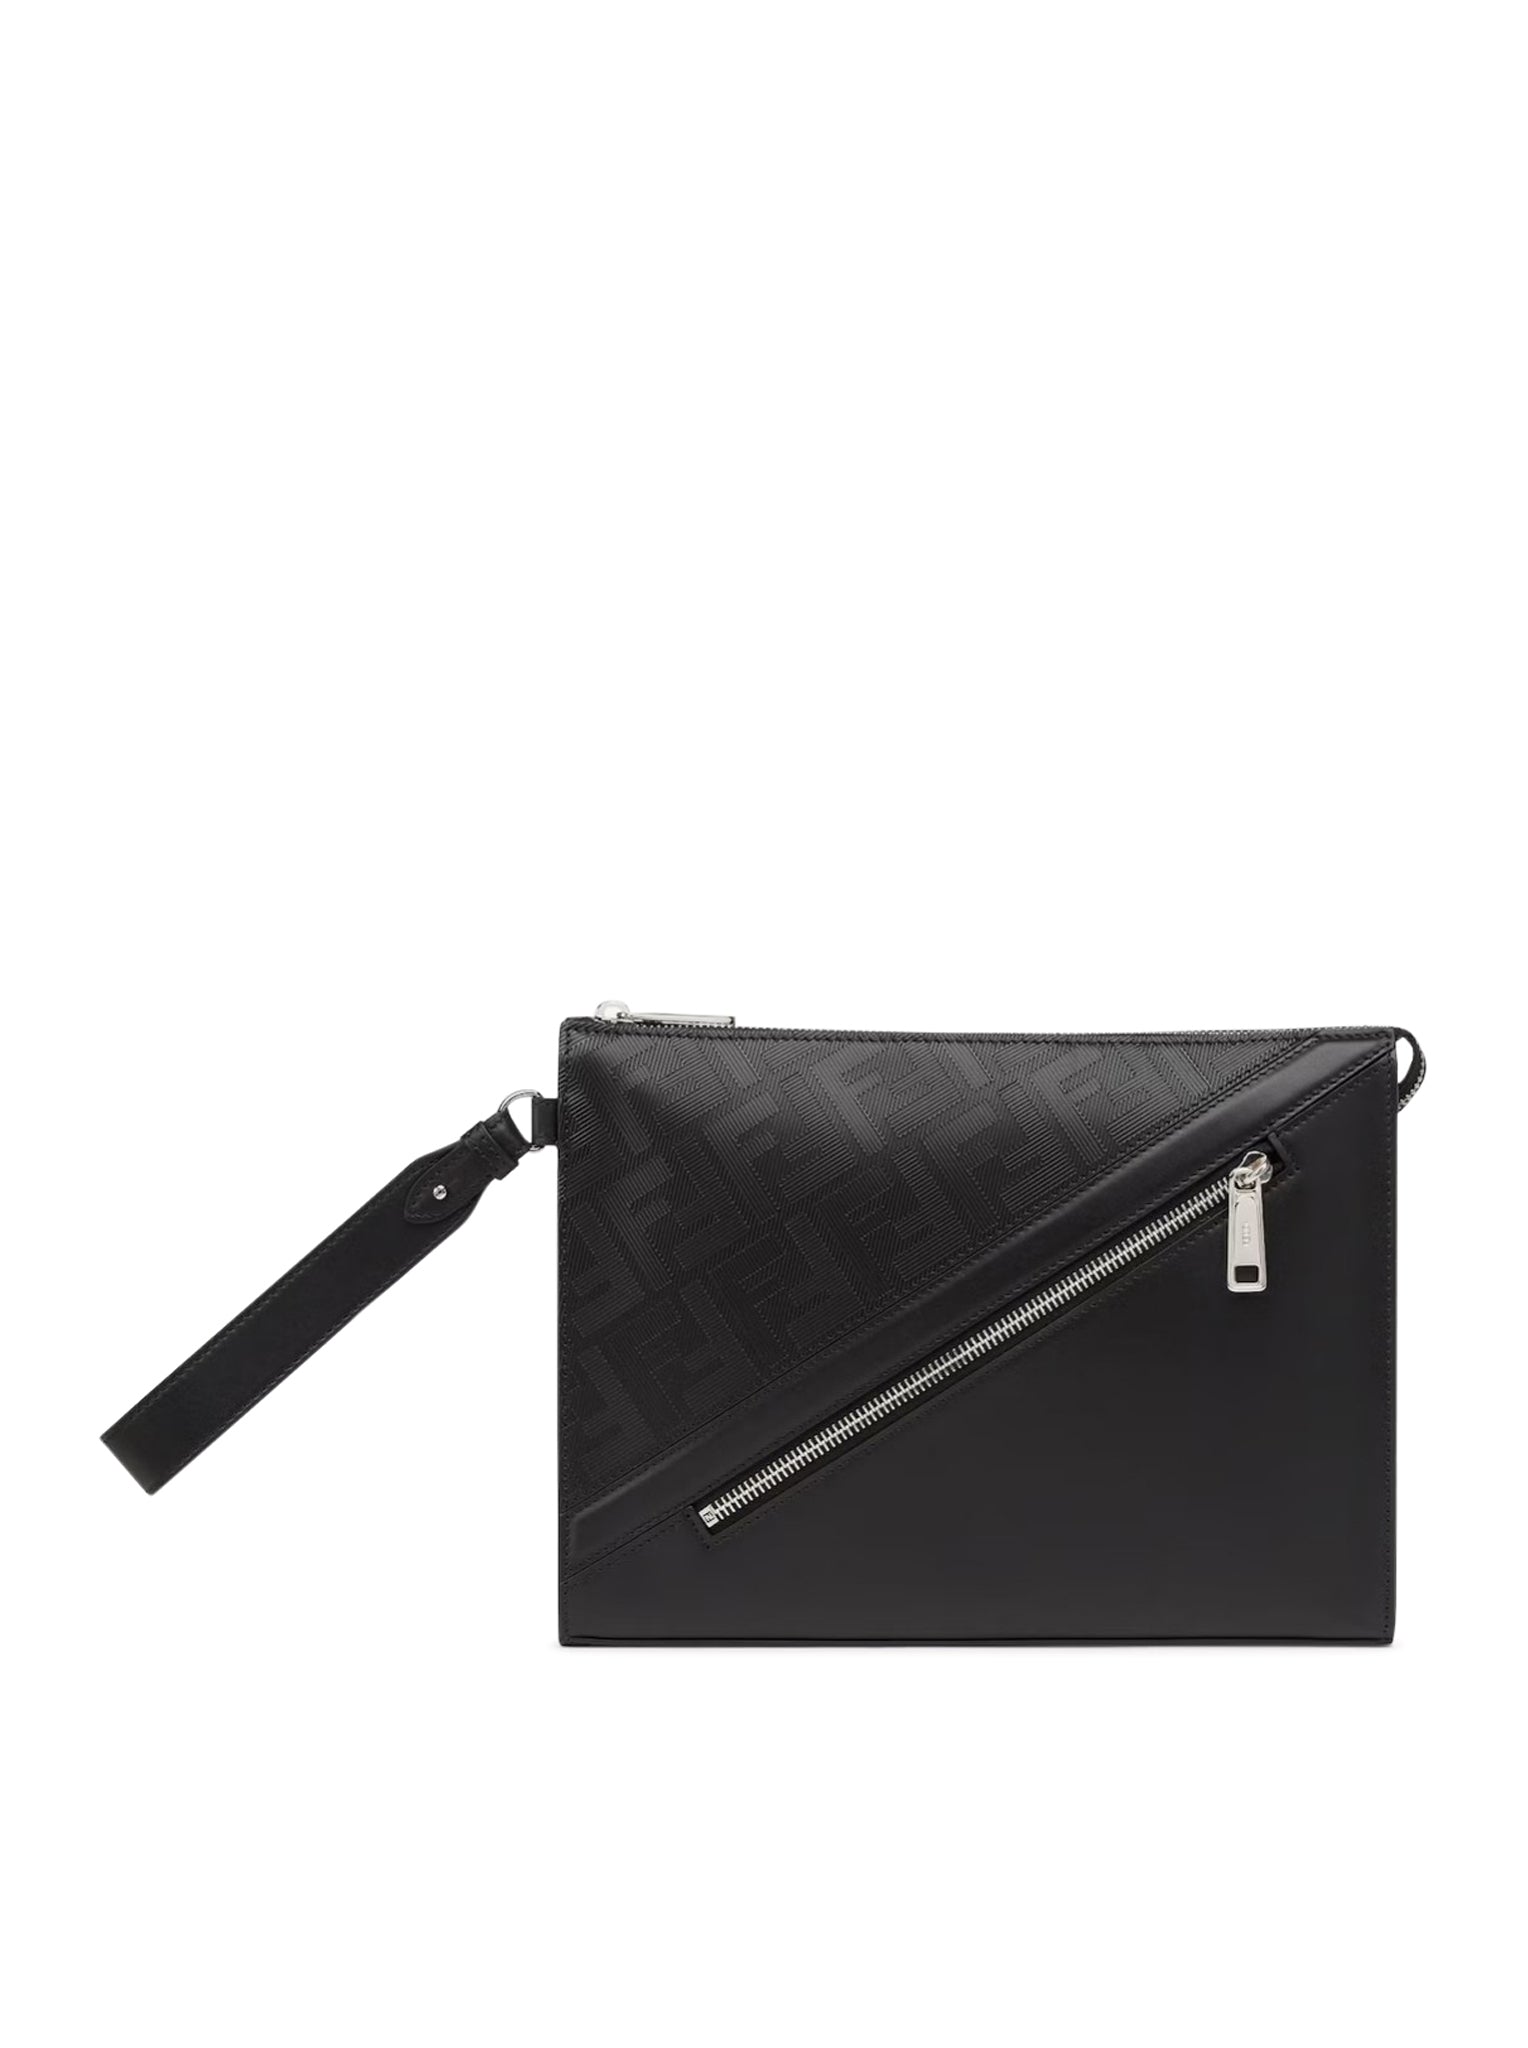 Fendi Diagonal Clutch - Multicolour leather pouch